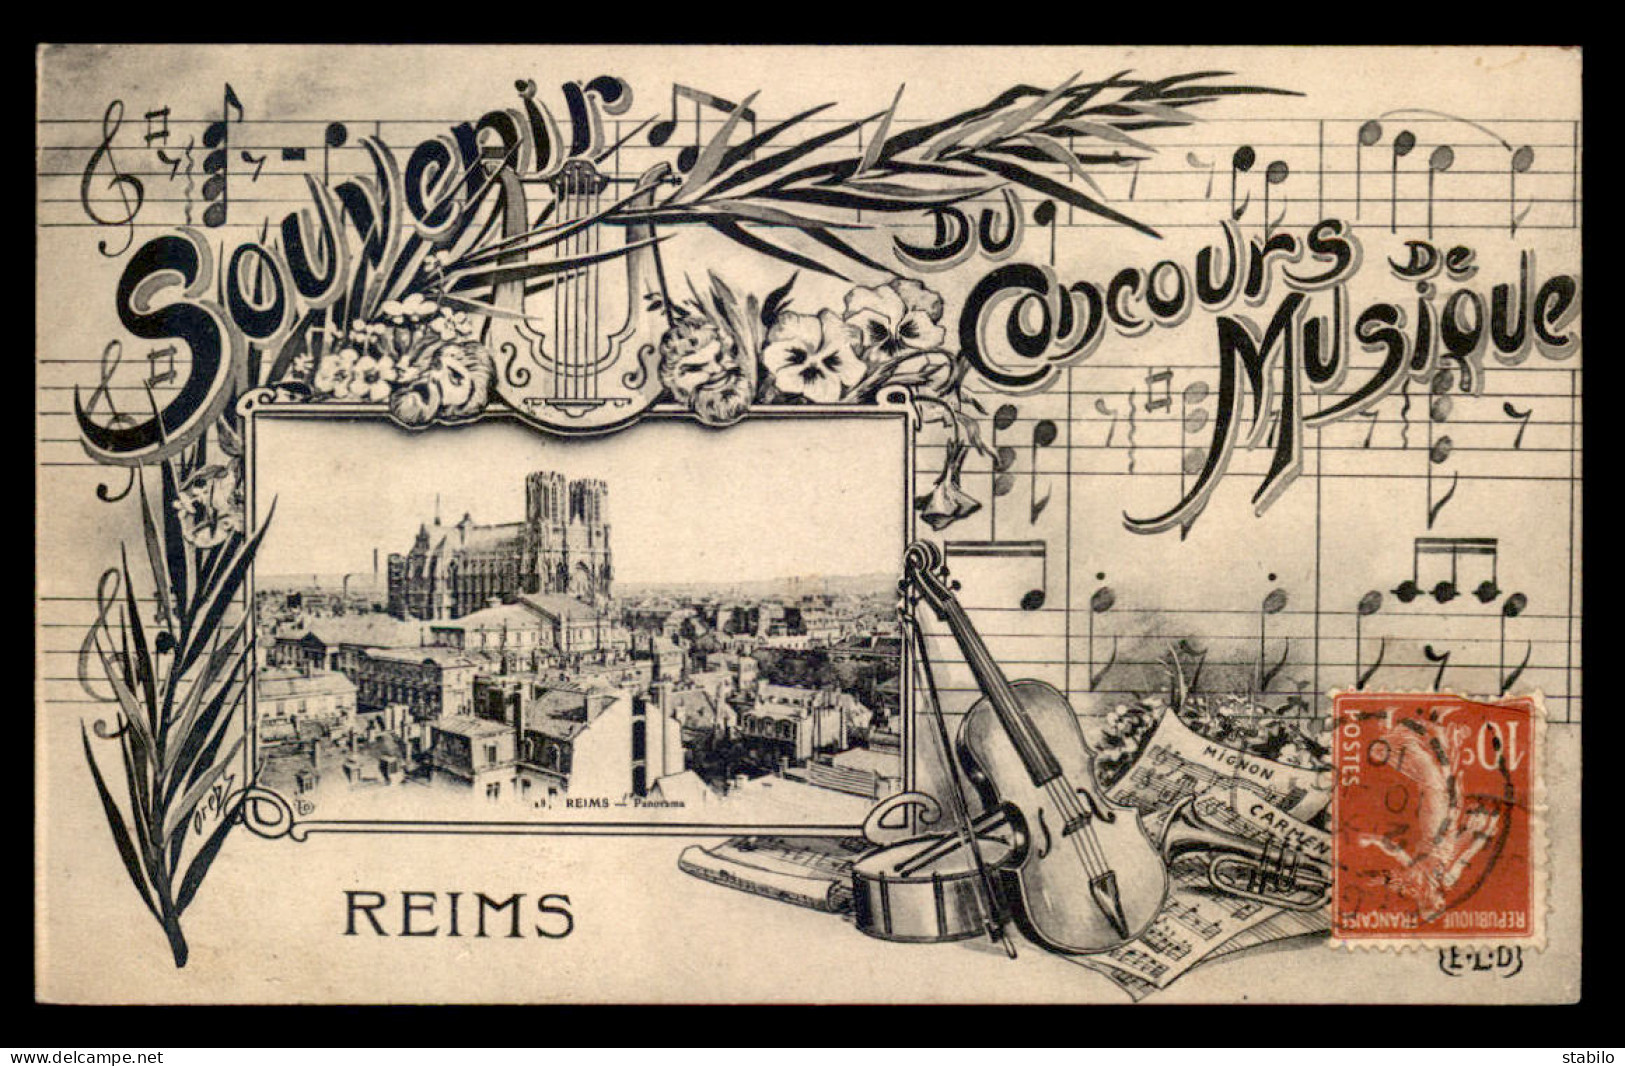 51 - REIMS - SOUVENIR DU CONCOURS DE MUSIQUE - CARTE ILLUSTREE - Reims